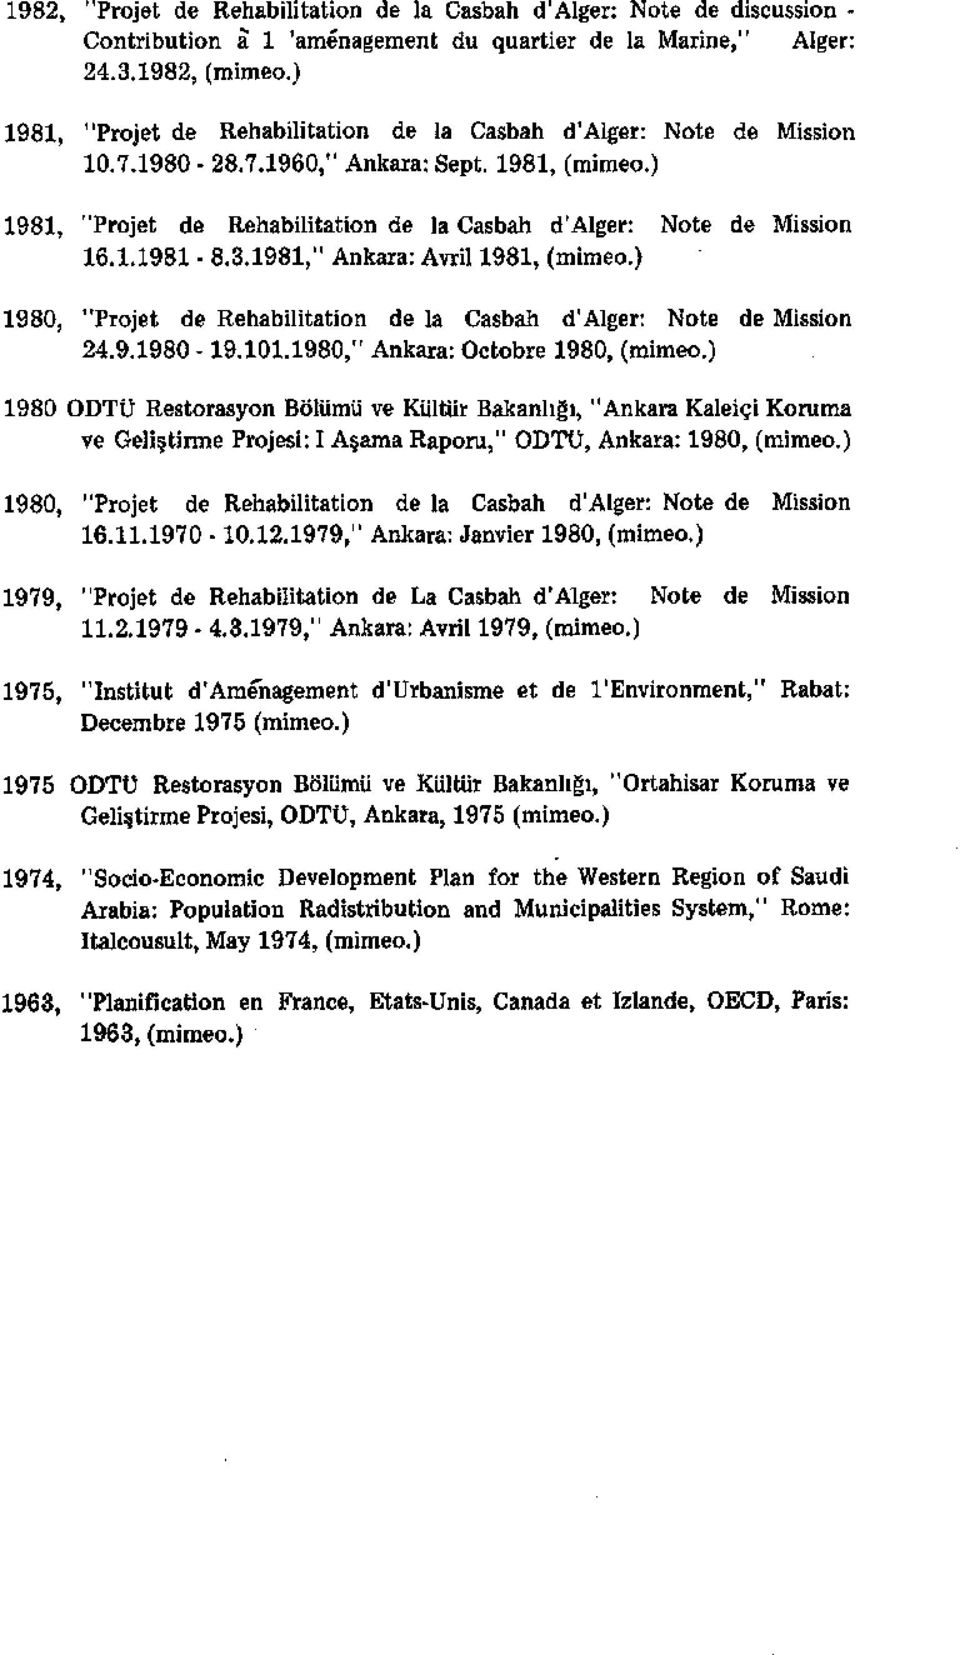 ) 1980, "Projet de Rehabilitation de la Casbah d'alger: Note de Mission 24.9.1980-19.101.1980," Ankara: Octobre 1980, (mimeo.